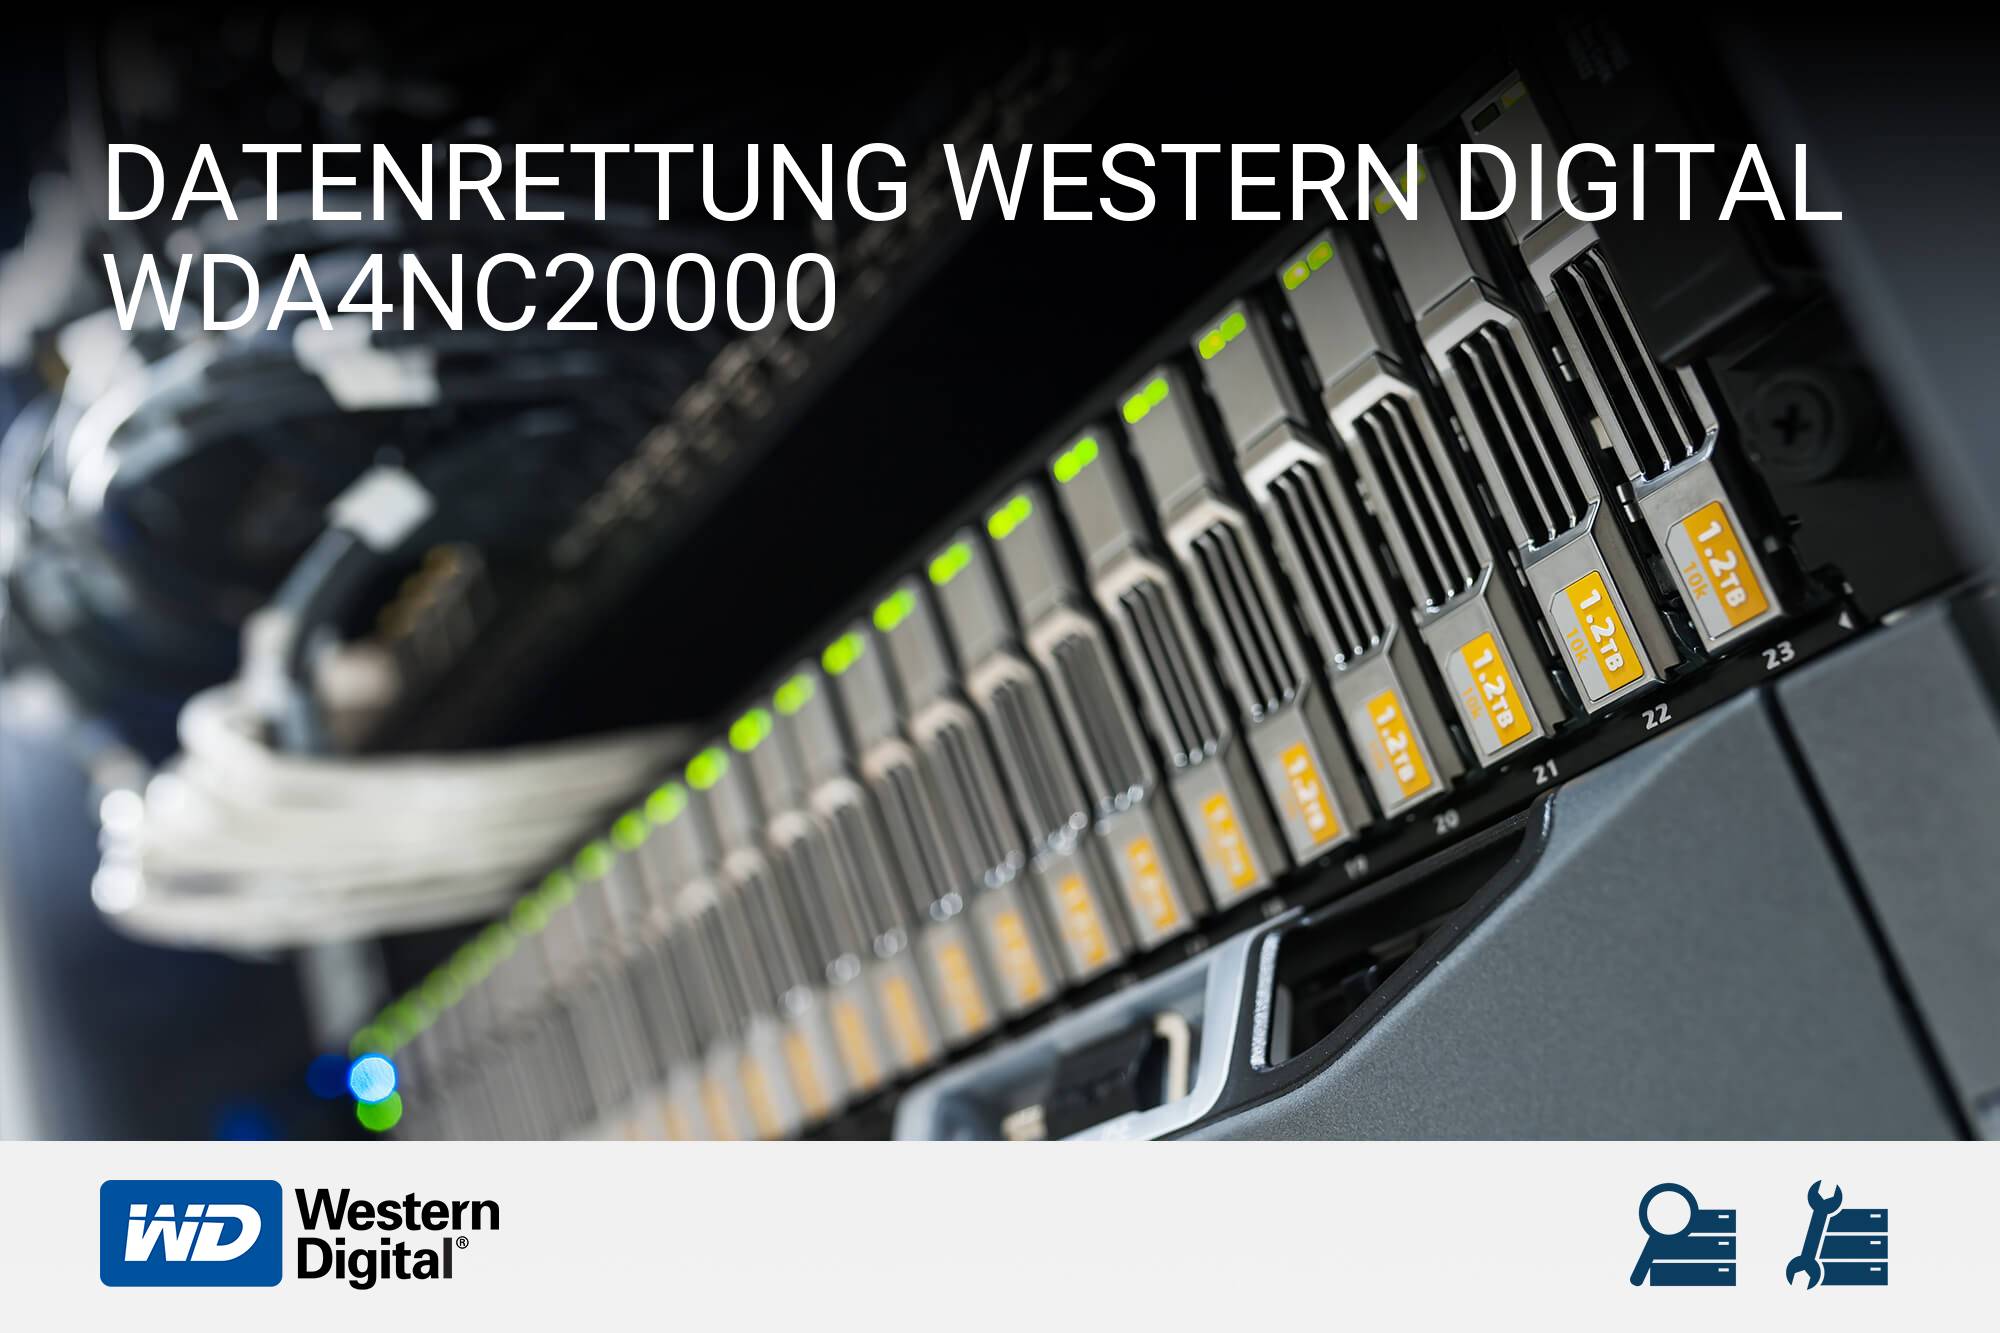 Western Digital WDA4NC20000